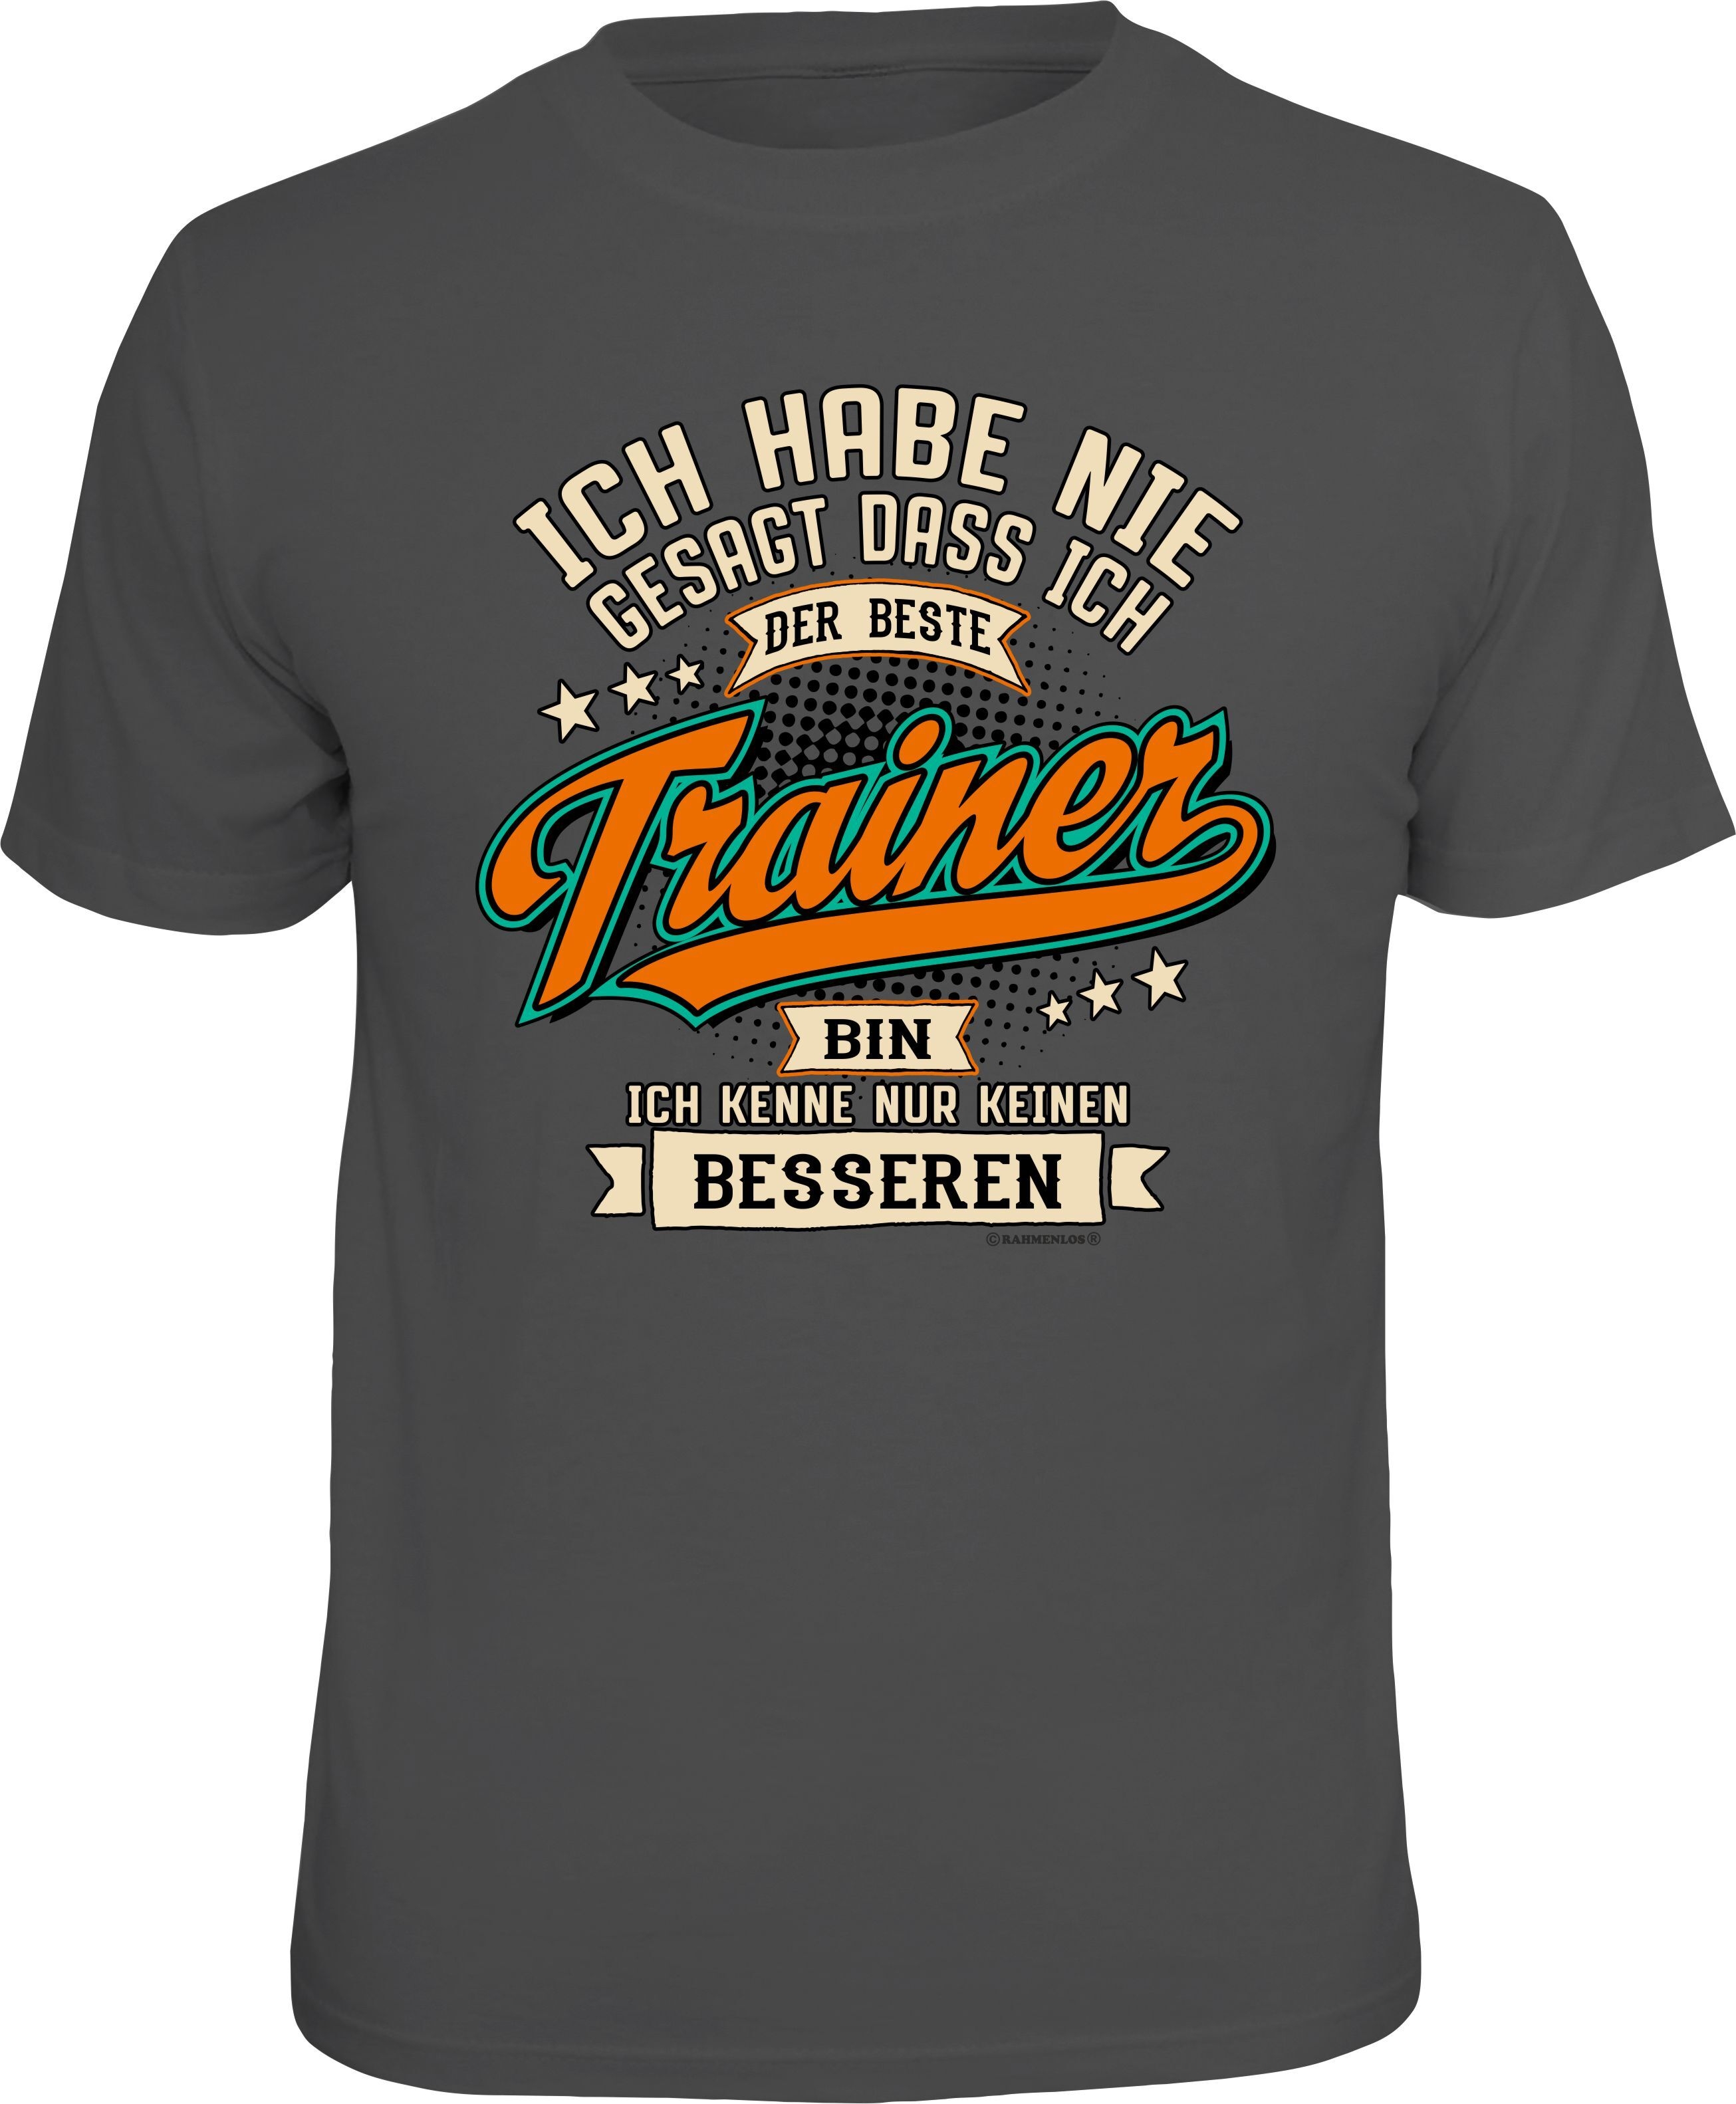 Reduziert - Fun T-Shirt - Der beste Trainer, Größe M